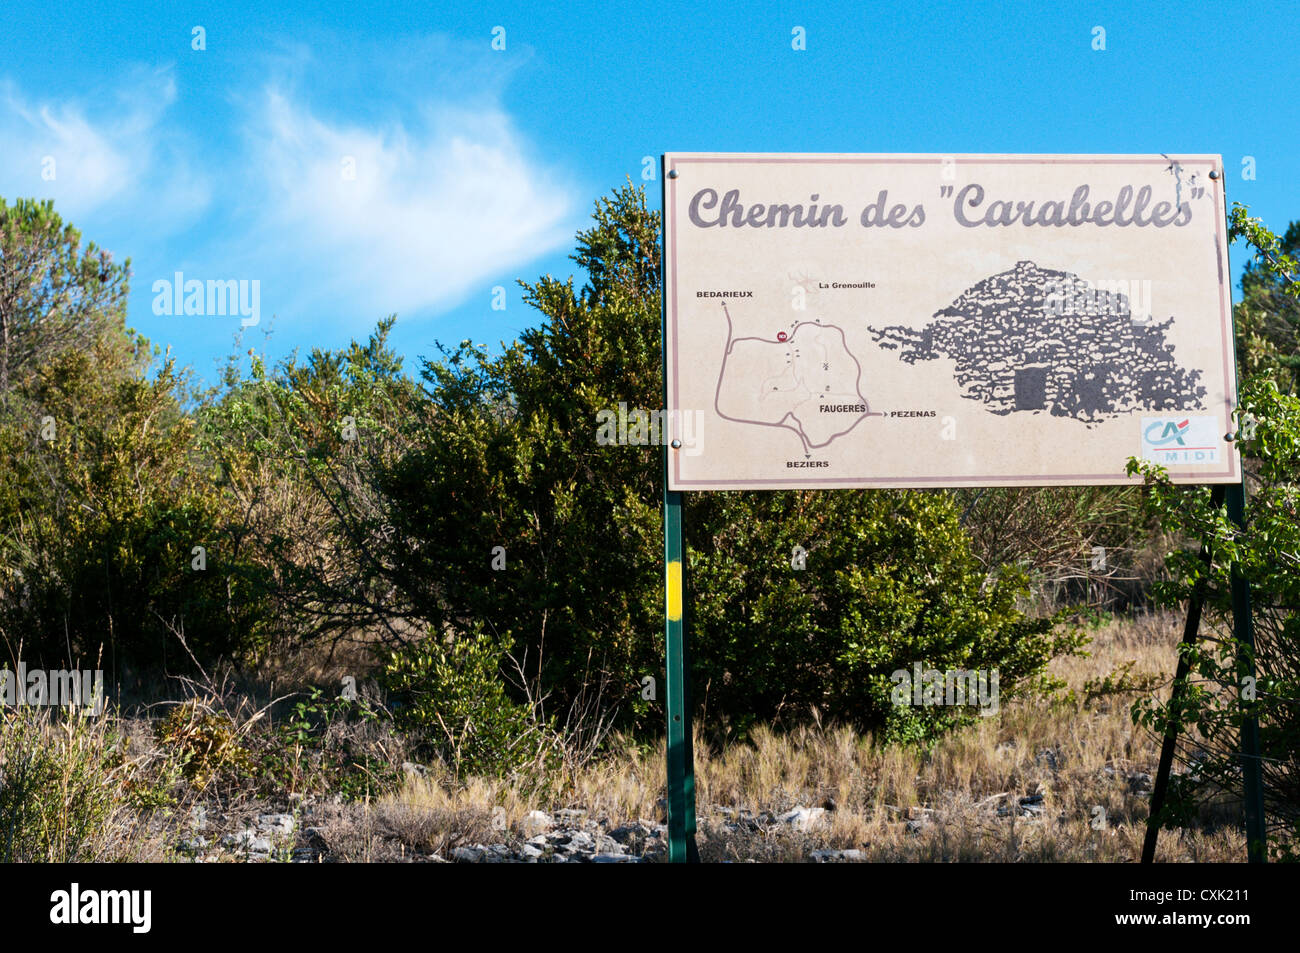 A sign for the Chemin des Carabelles in the Parc naturel régional du Haut-Languedoc near Faugères. Stock Photo